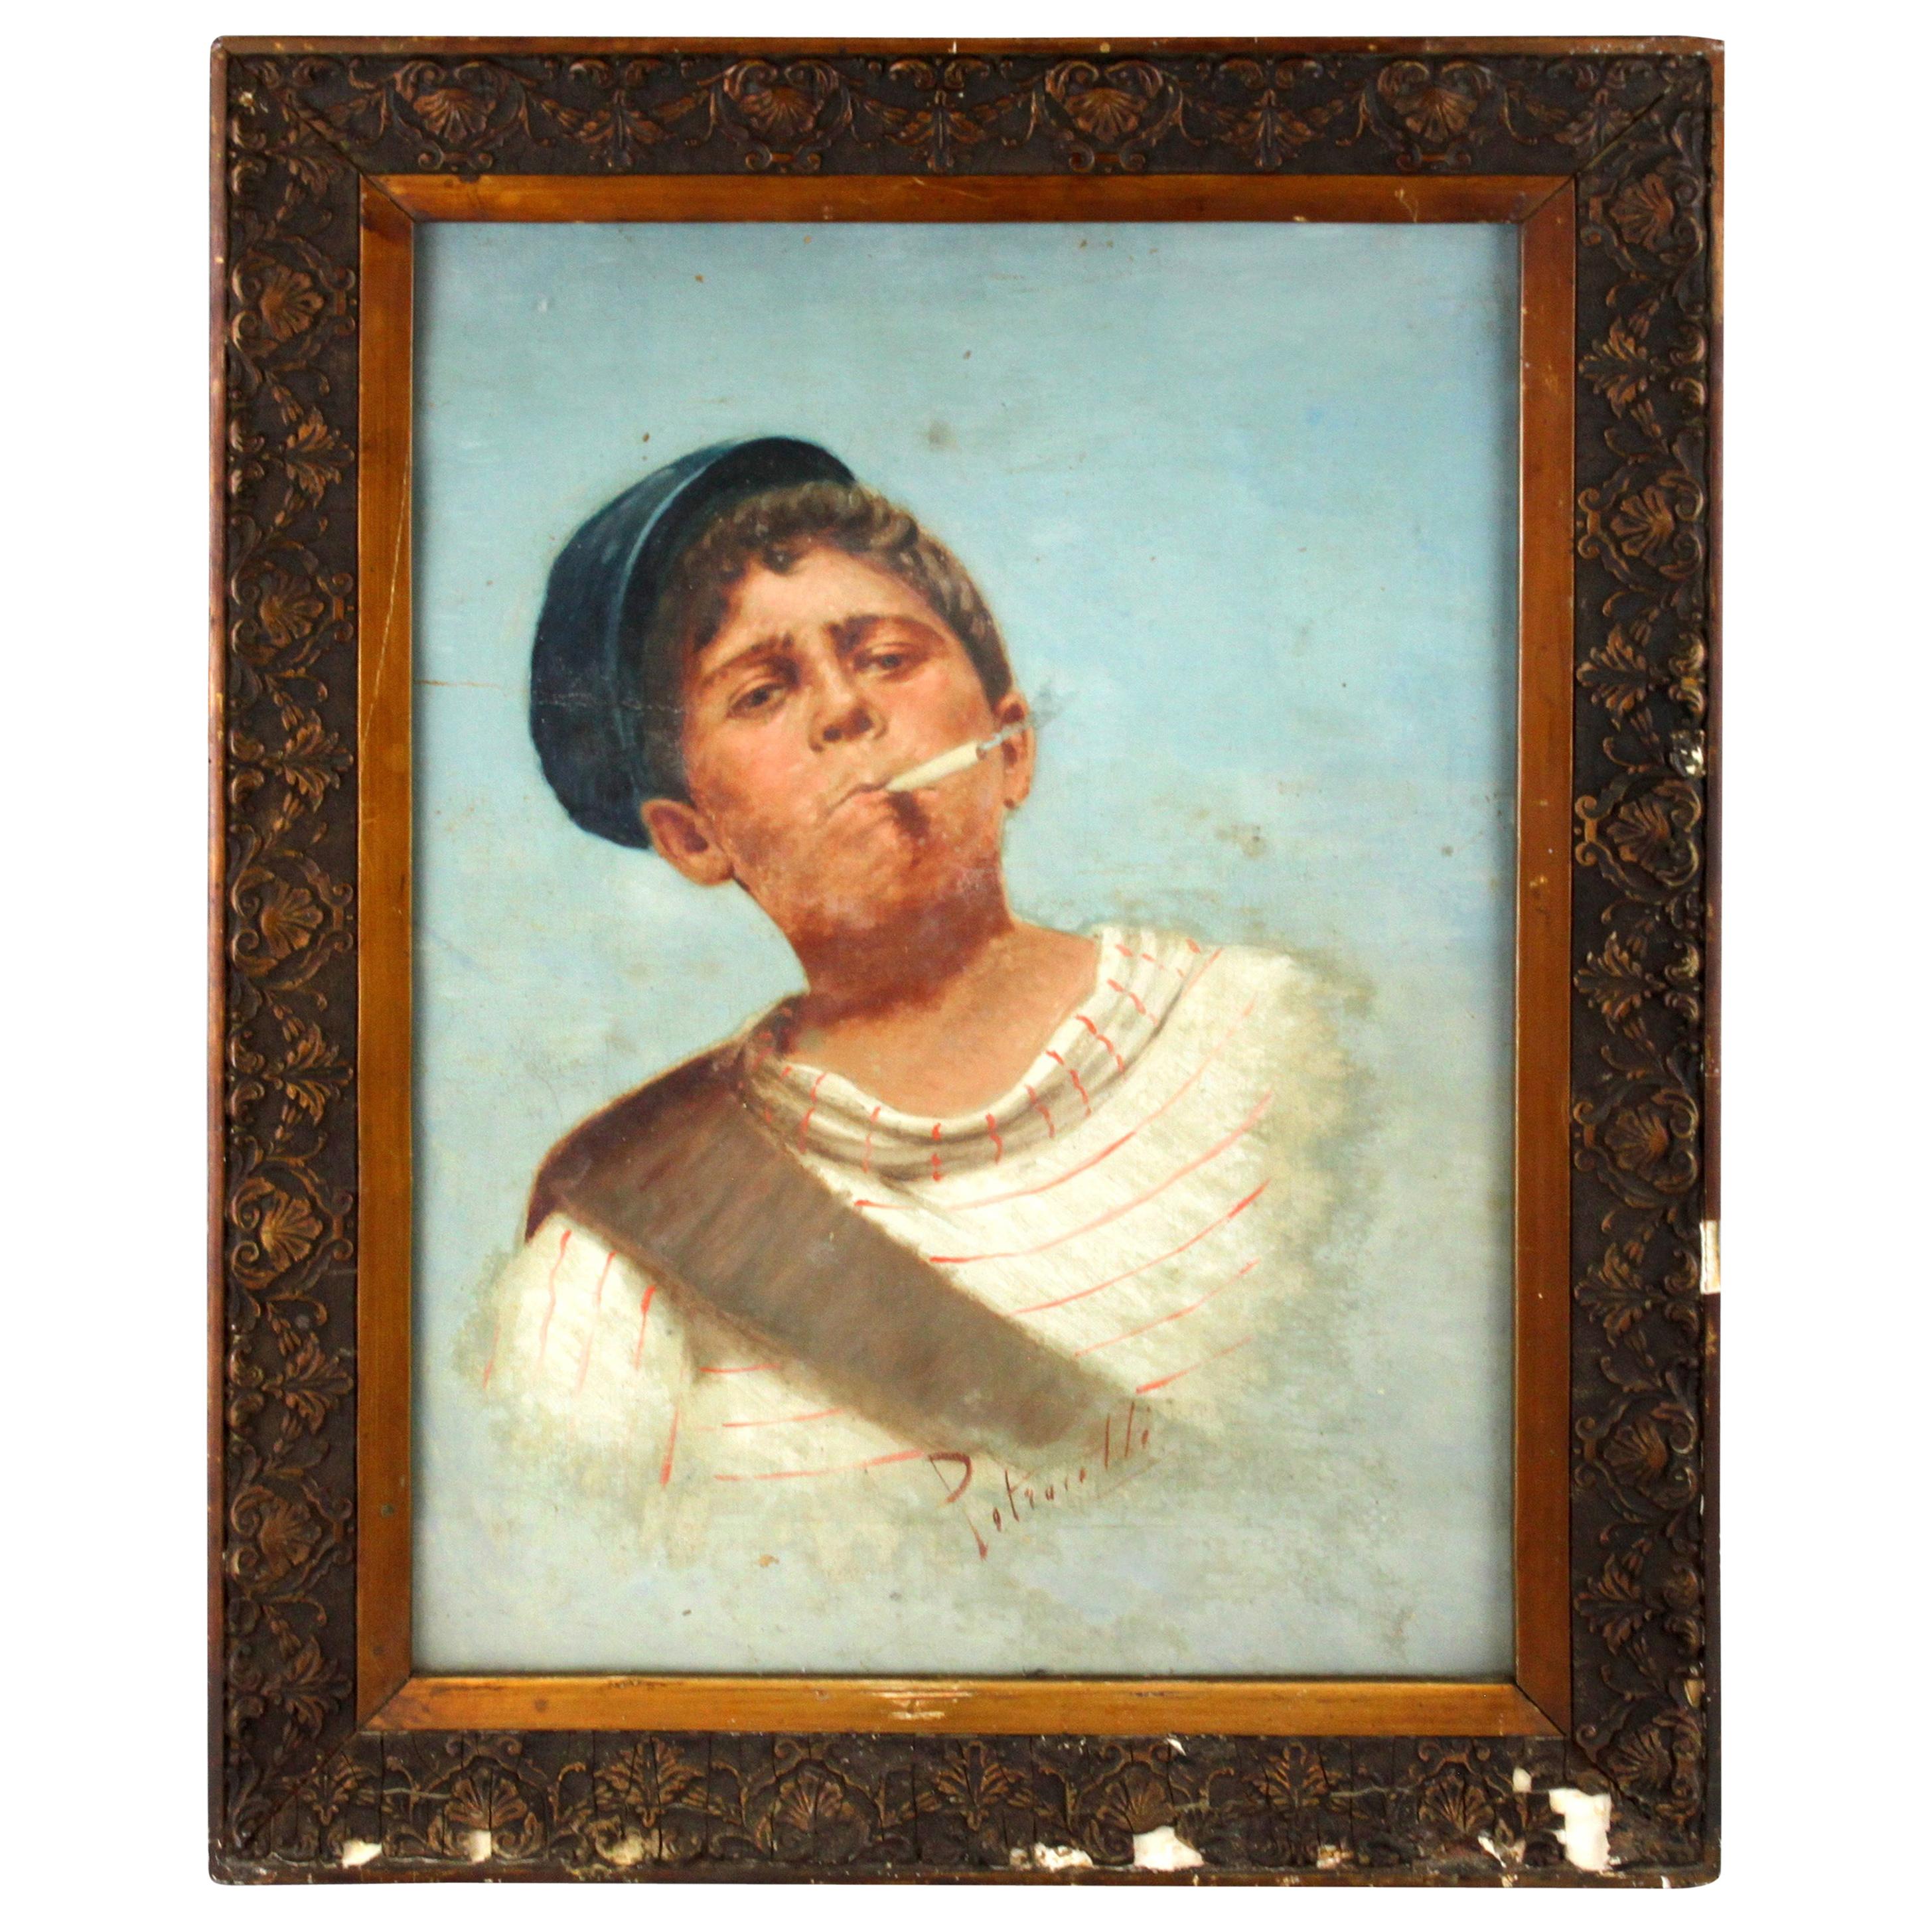 Arturo Petrocelli, a Young Neapolitan Boy with Cigarette, circa 1880s